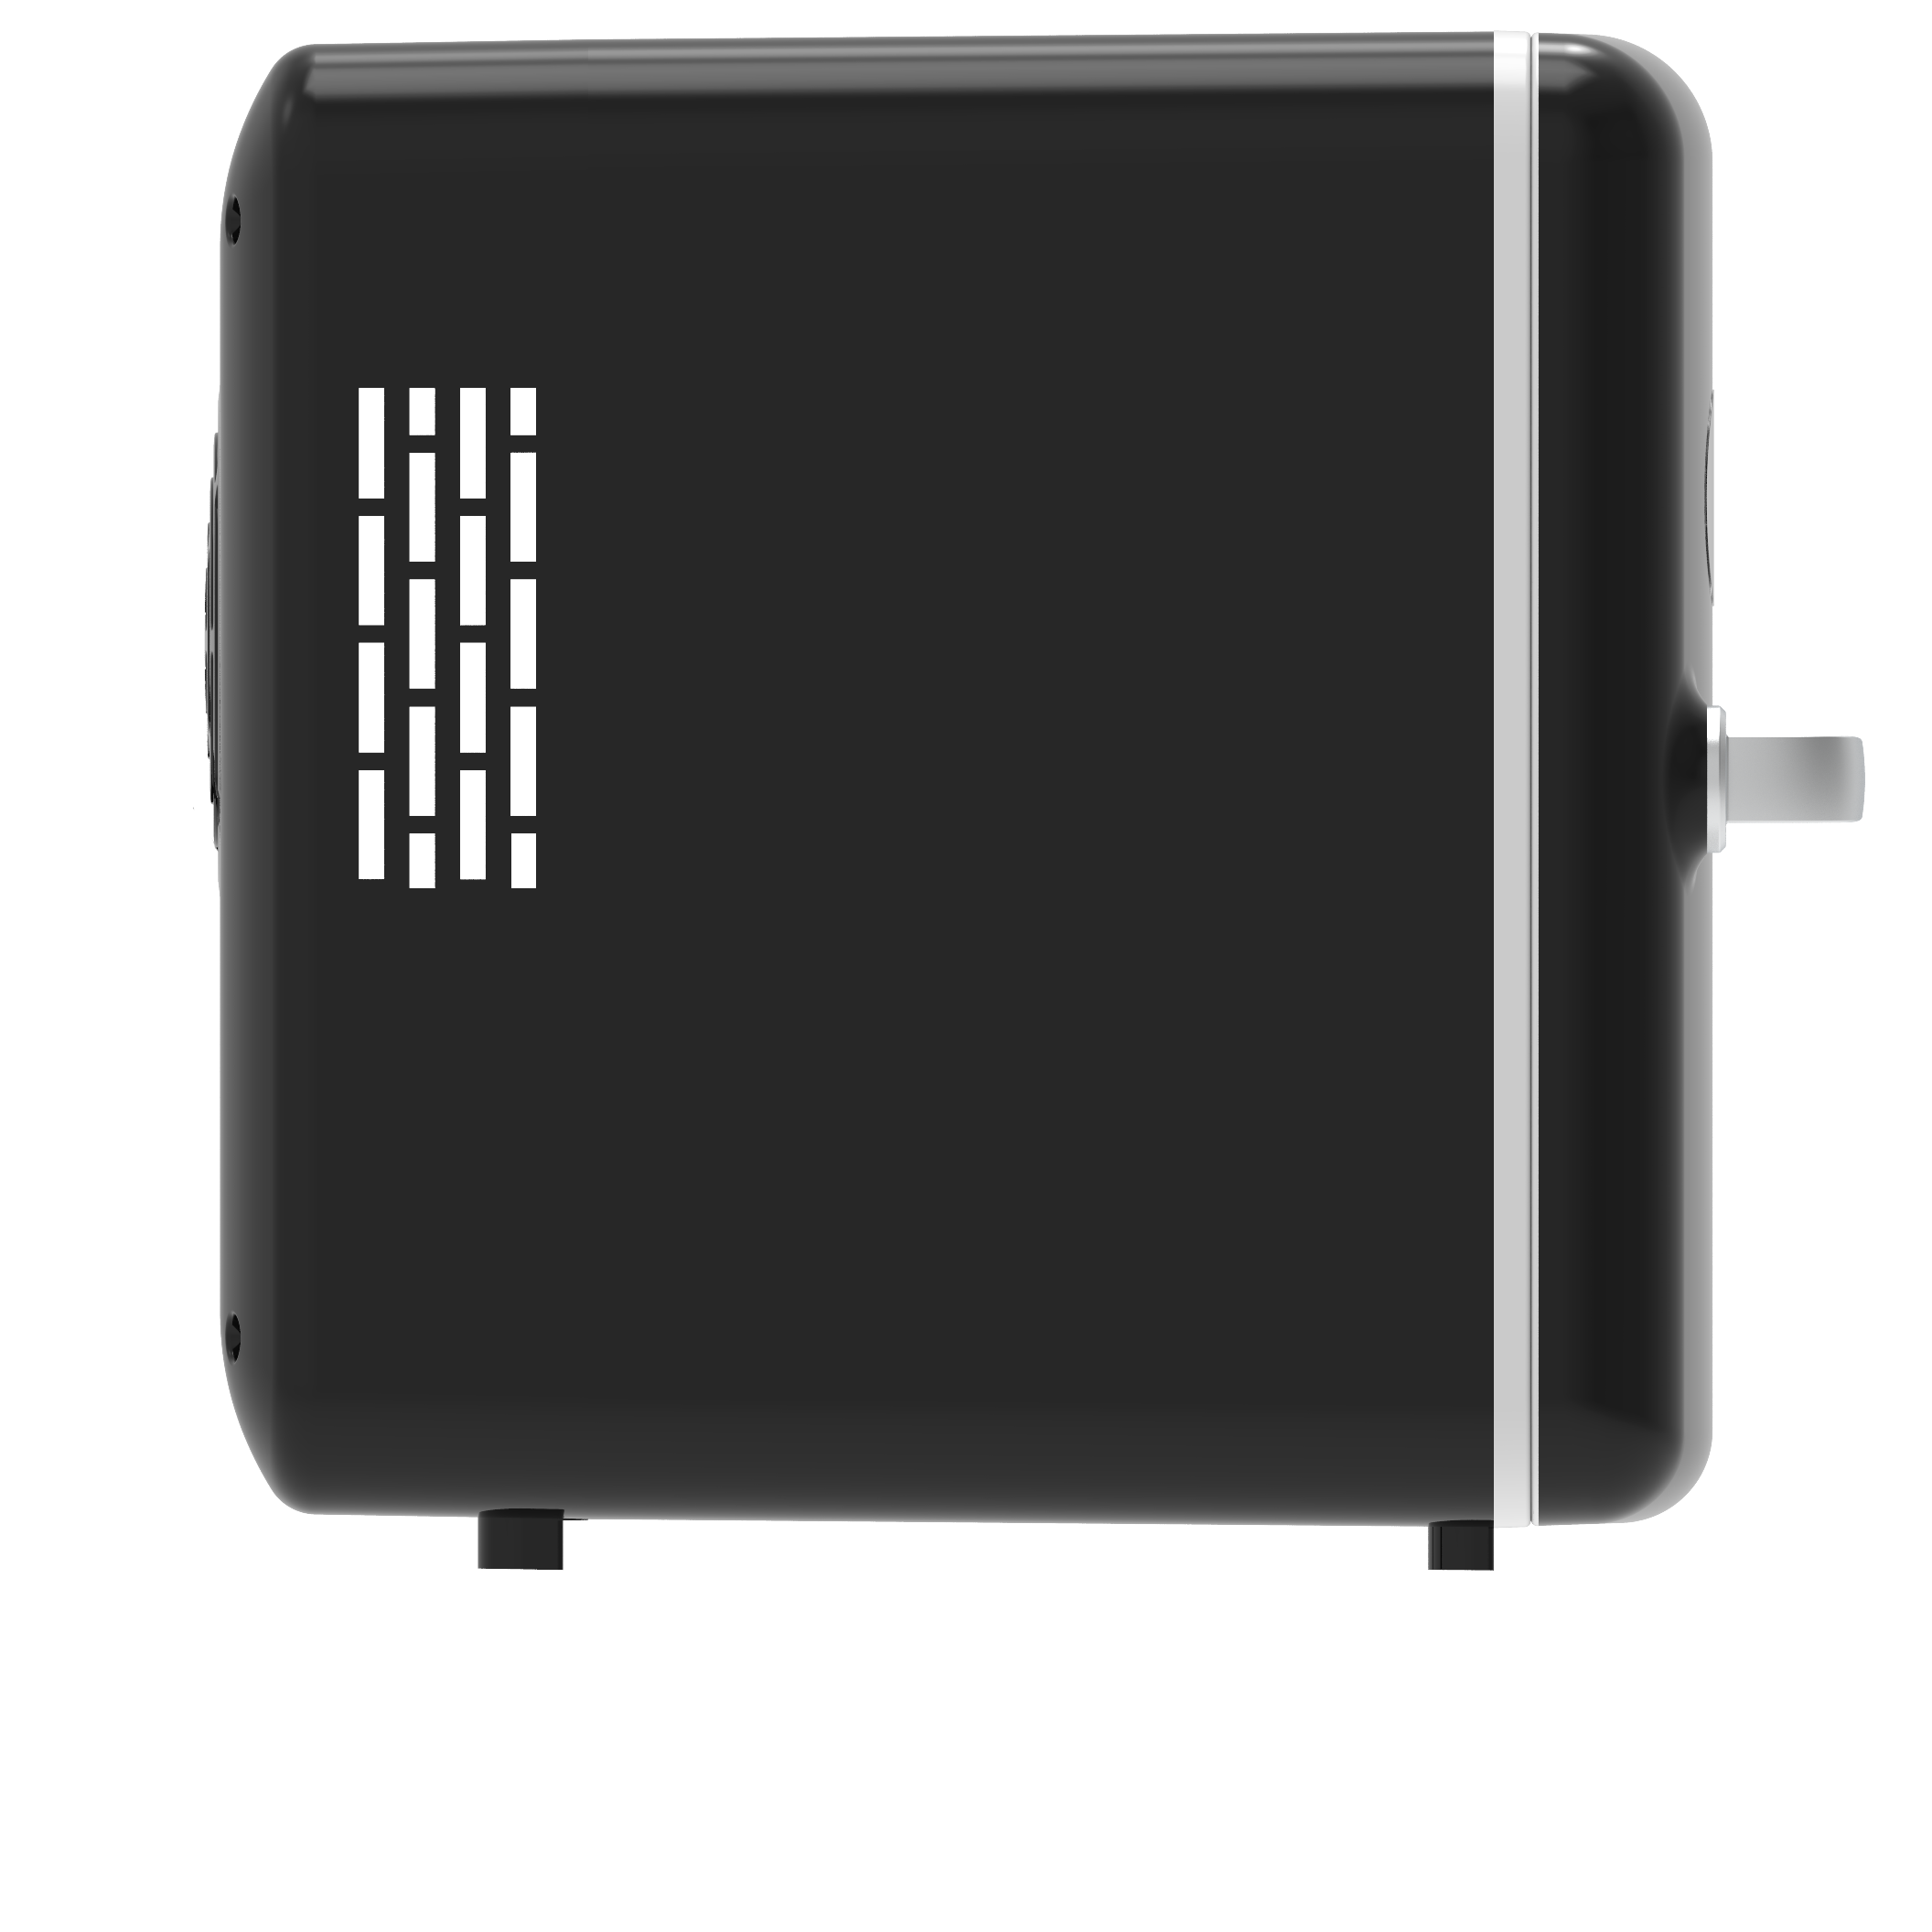 Frigidaire Retro 6-Can Mini Cooler, Black, EFMIS175 - image 11 of 11